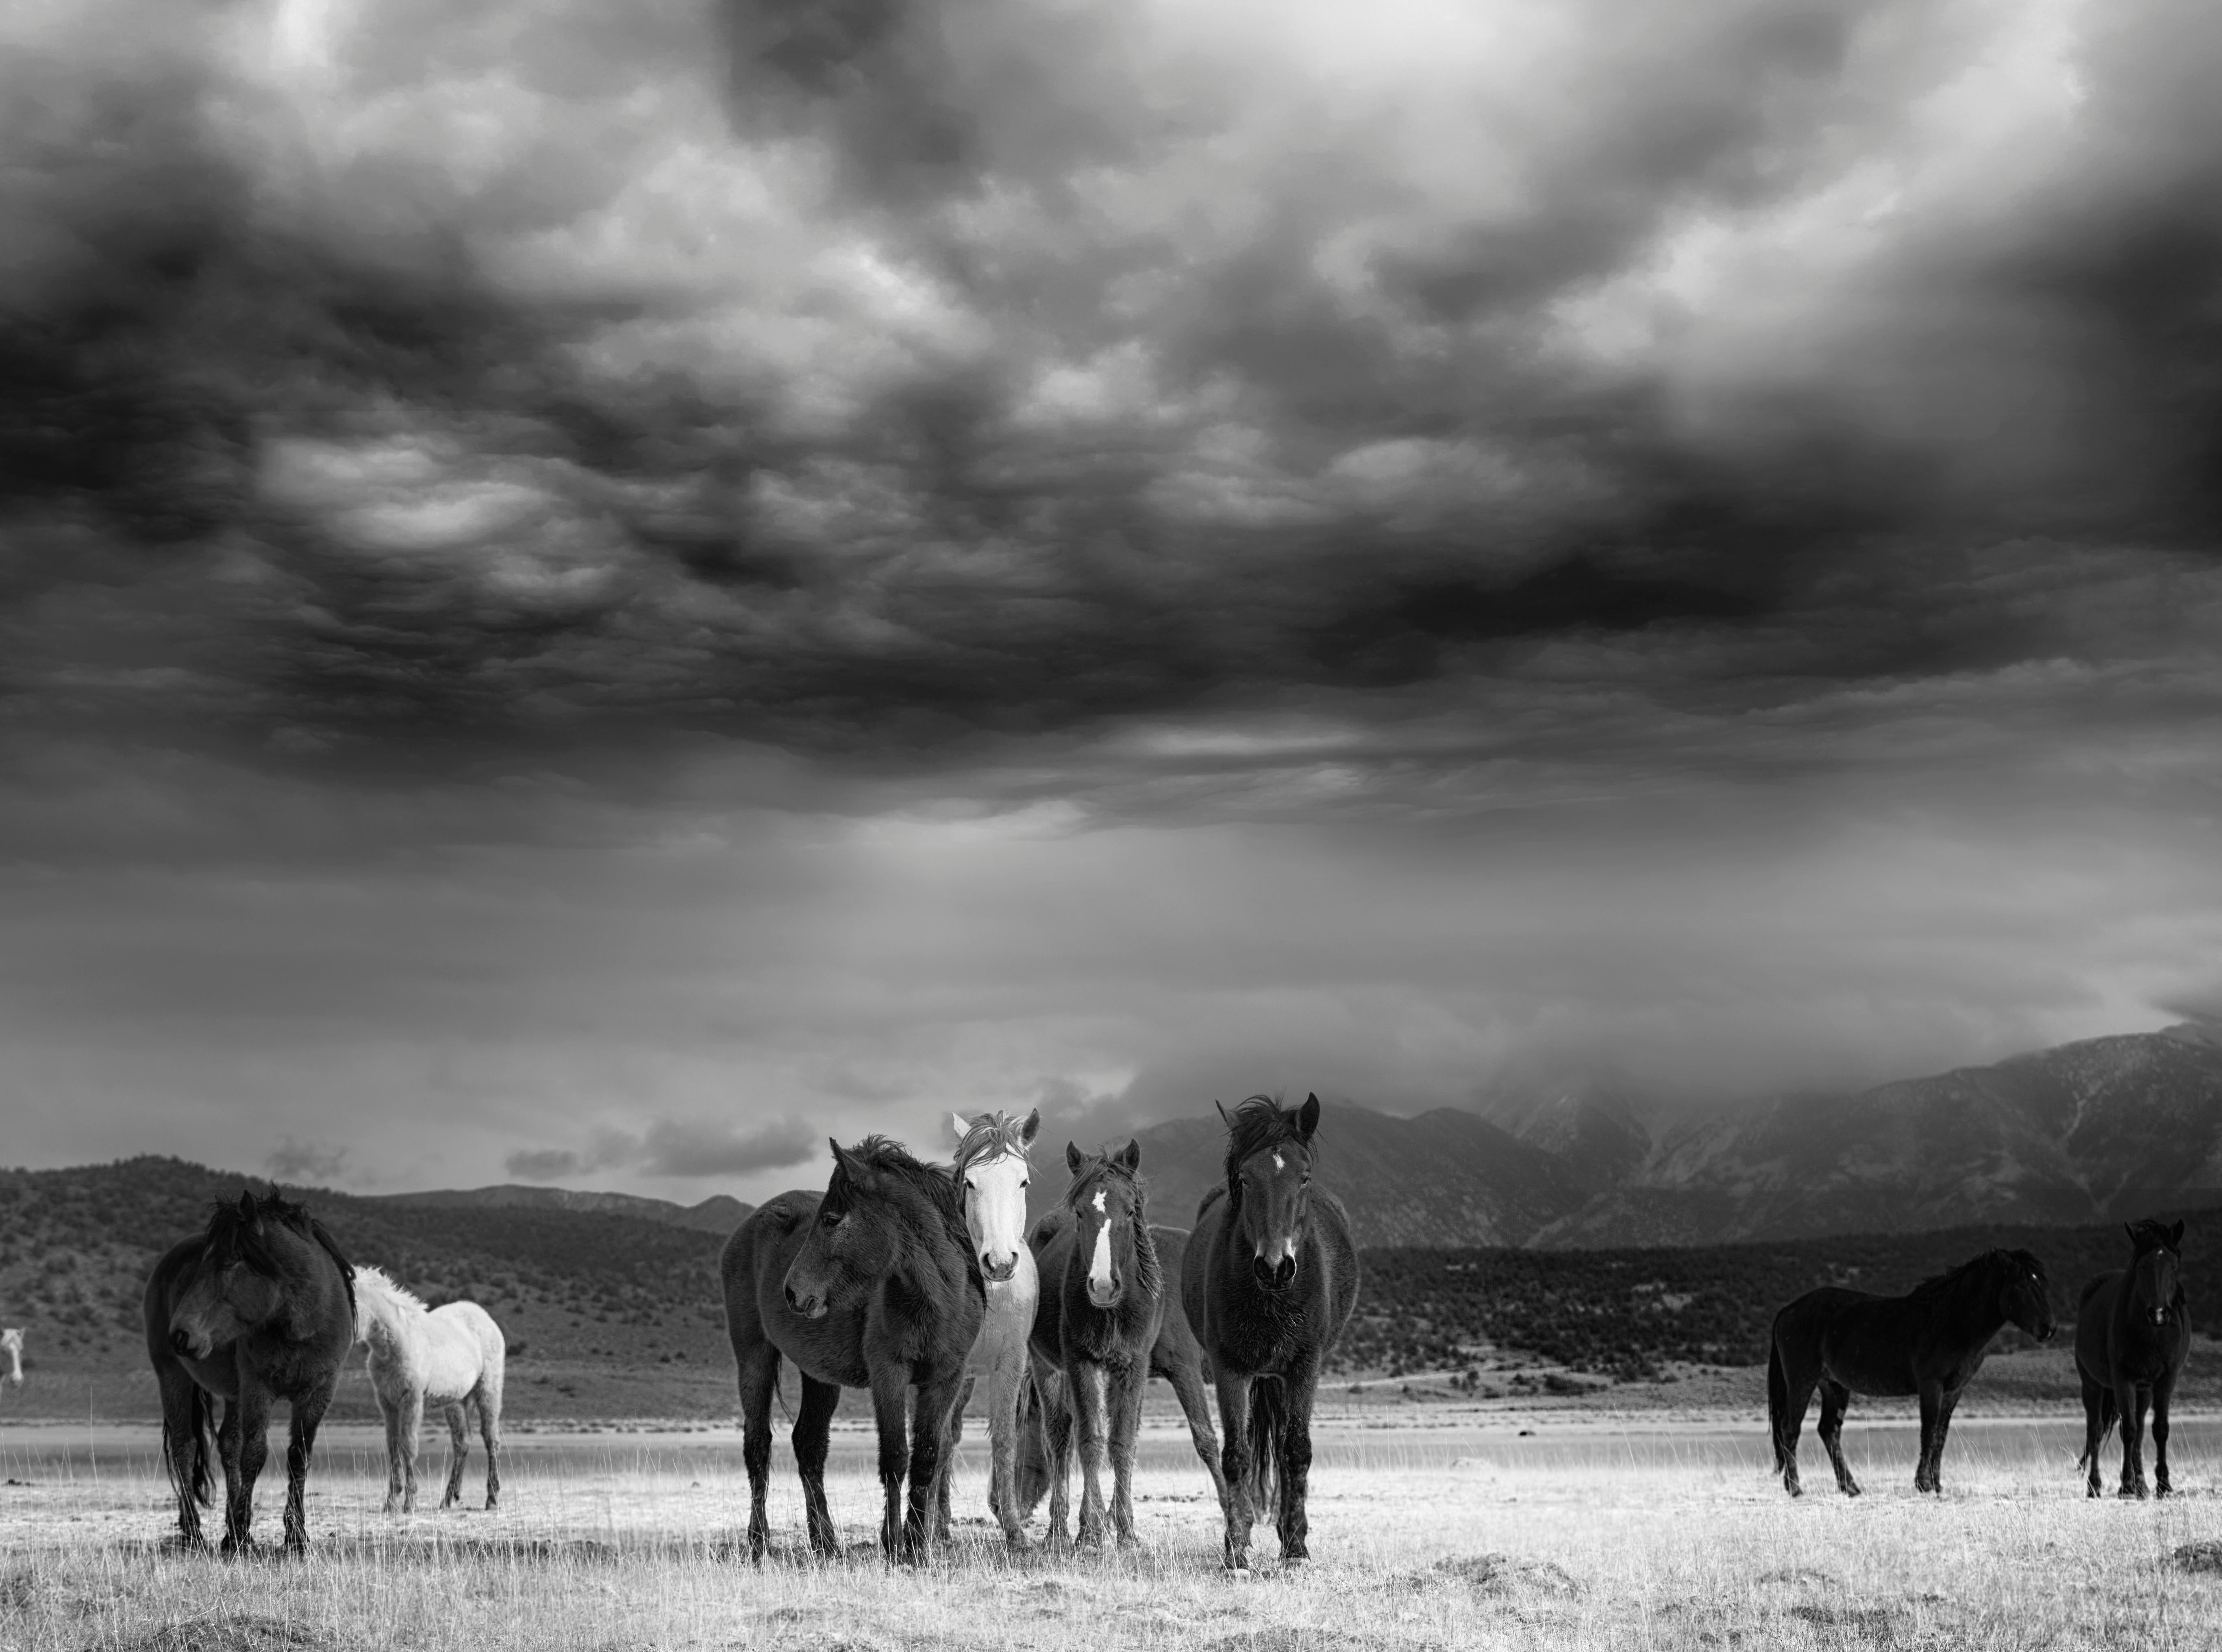 Black and White Photograph Shane Russeck - "The Calm" 28x40 Photographie en noir et blanc signée de chevaux sauvages, Mustangs  